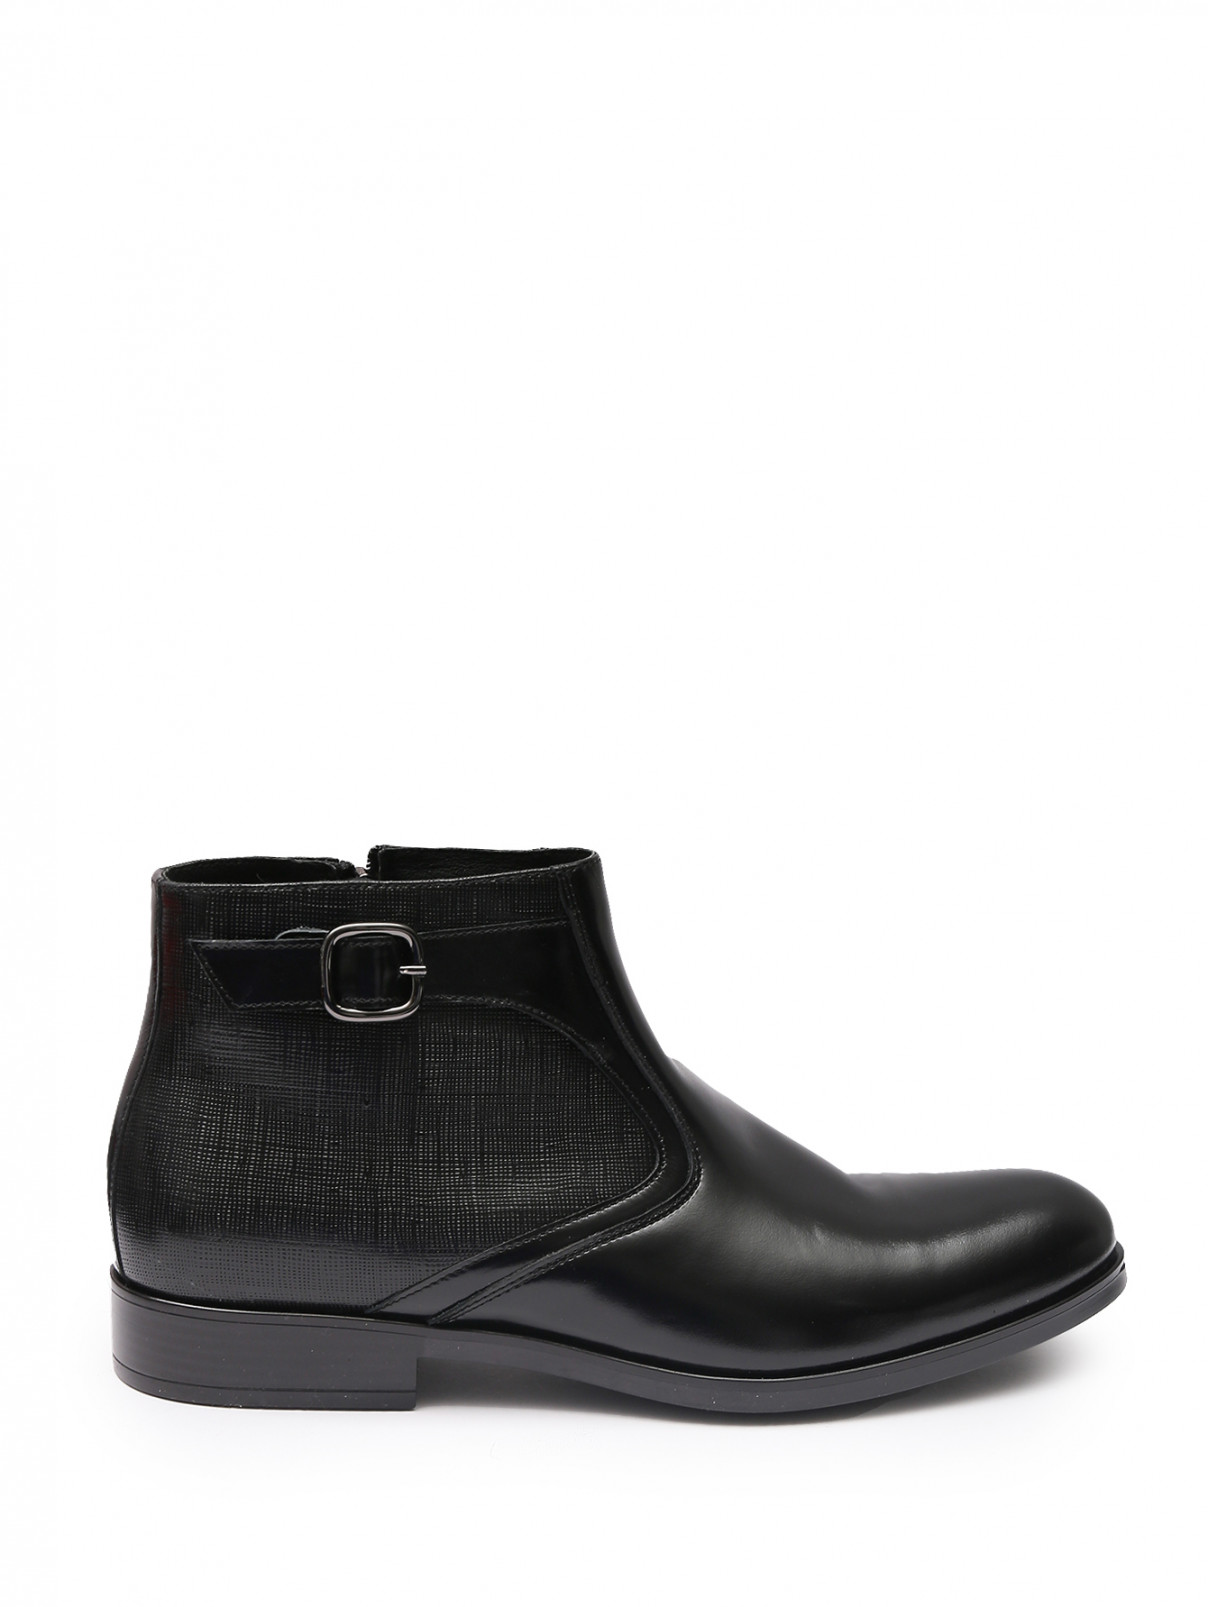 Кожаные ботинки с мехом Conhpol  –  Общий вид  – Цвет:  Черный